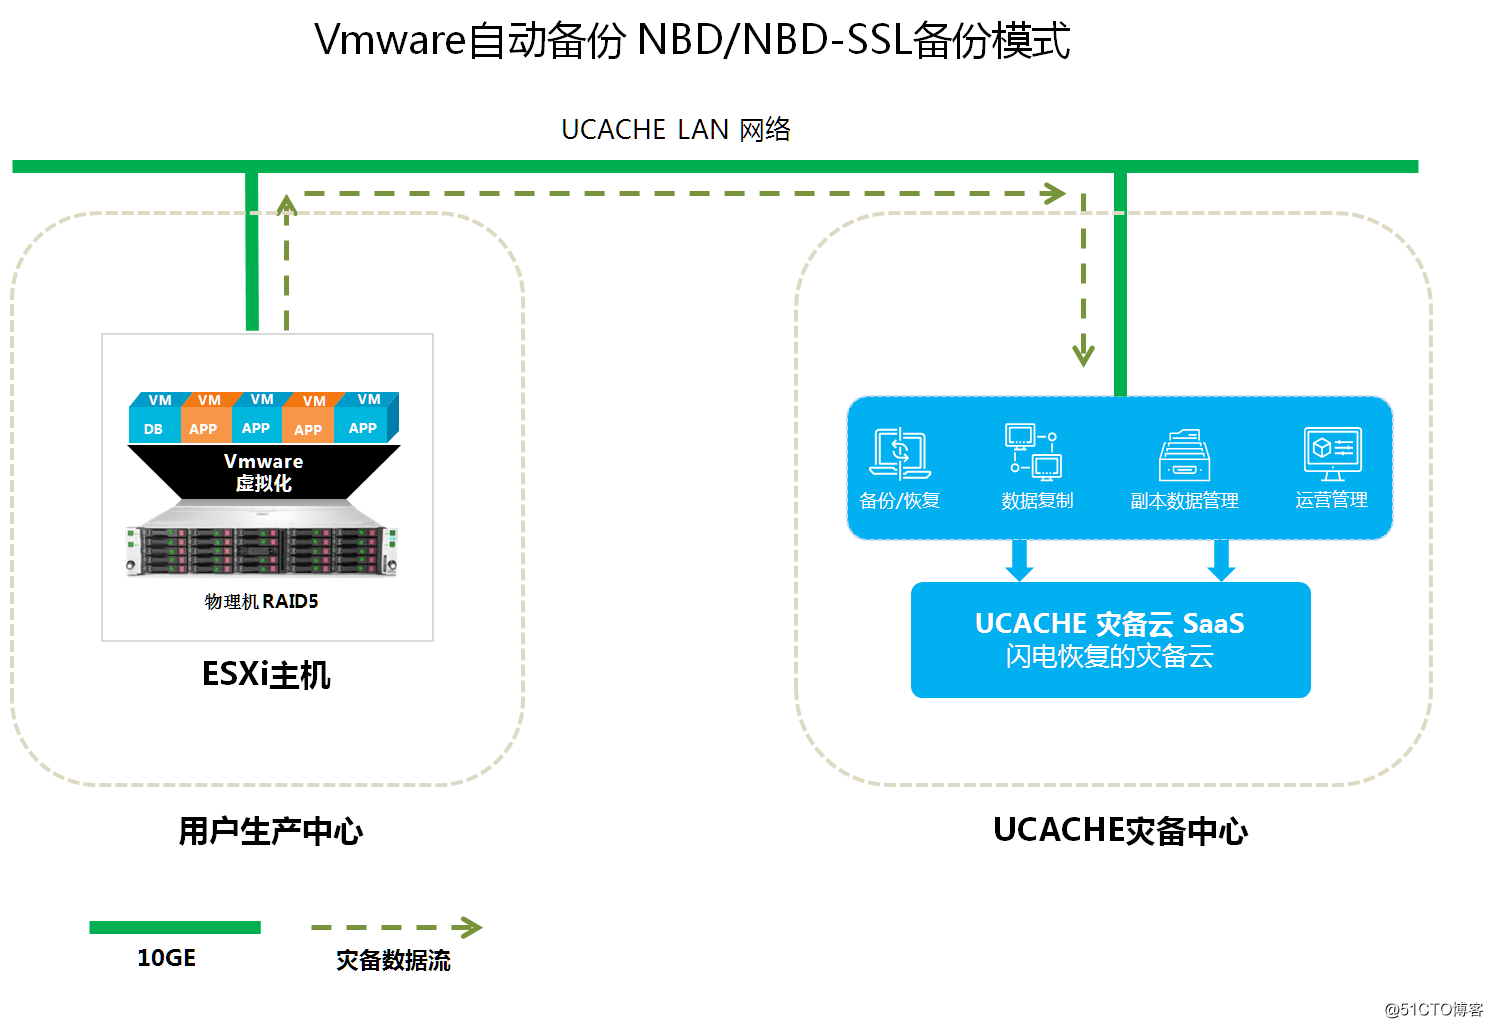 VMware plataforma de virtualización de copia de seguridad y recuperación